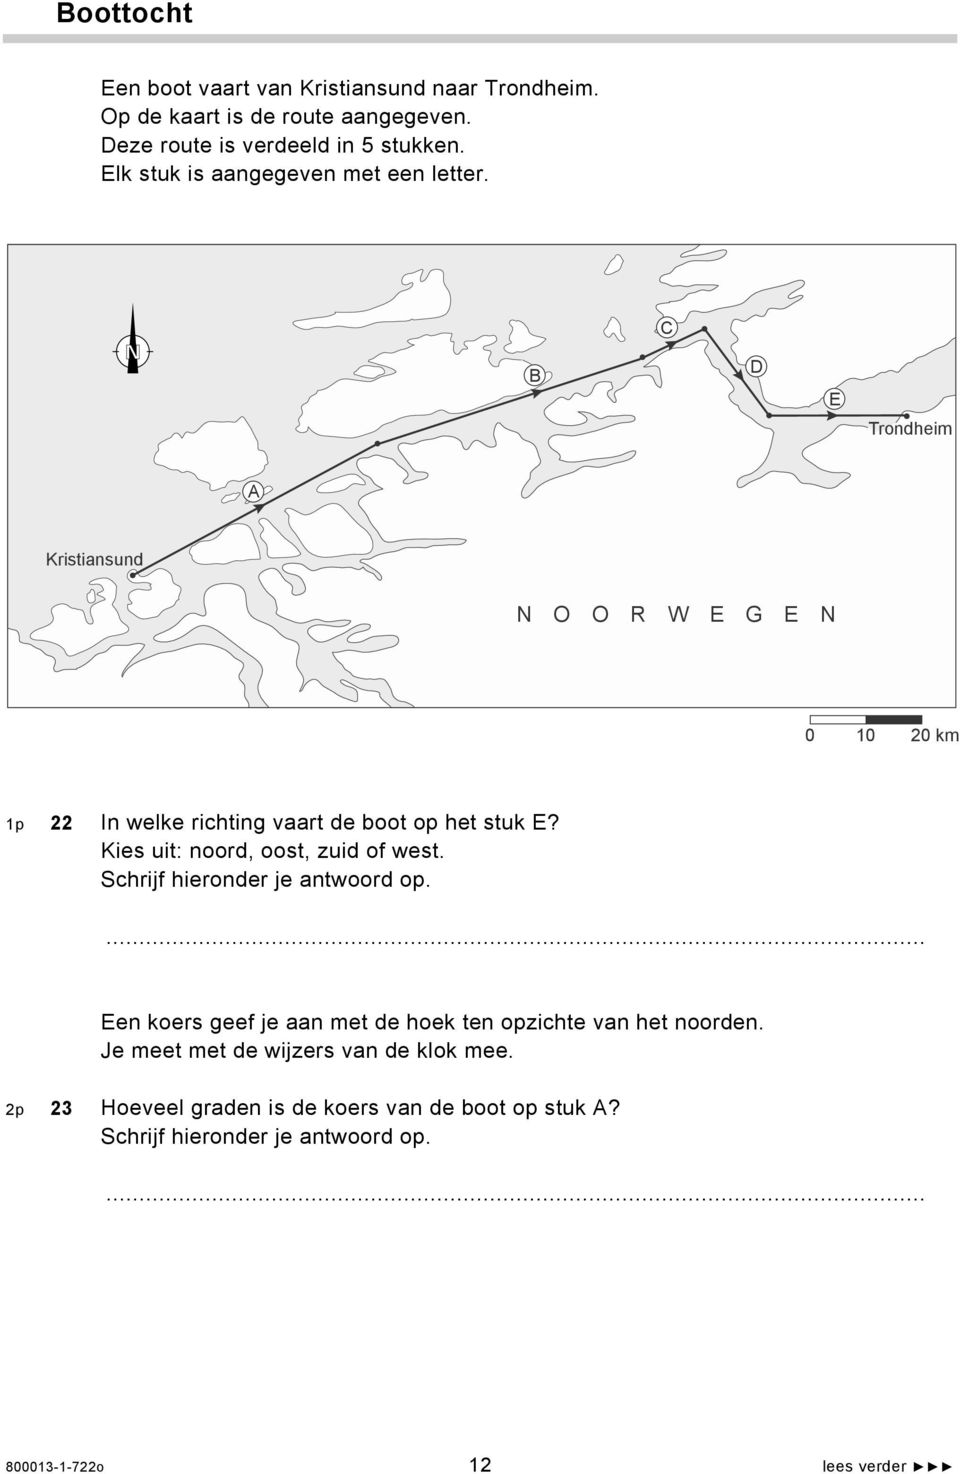 N B C D E Trondheim A Kristiansund N O O R W E G E N 0 10 20 km 1p 22 In welke richting vaart de boot op het stuk E?